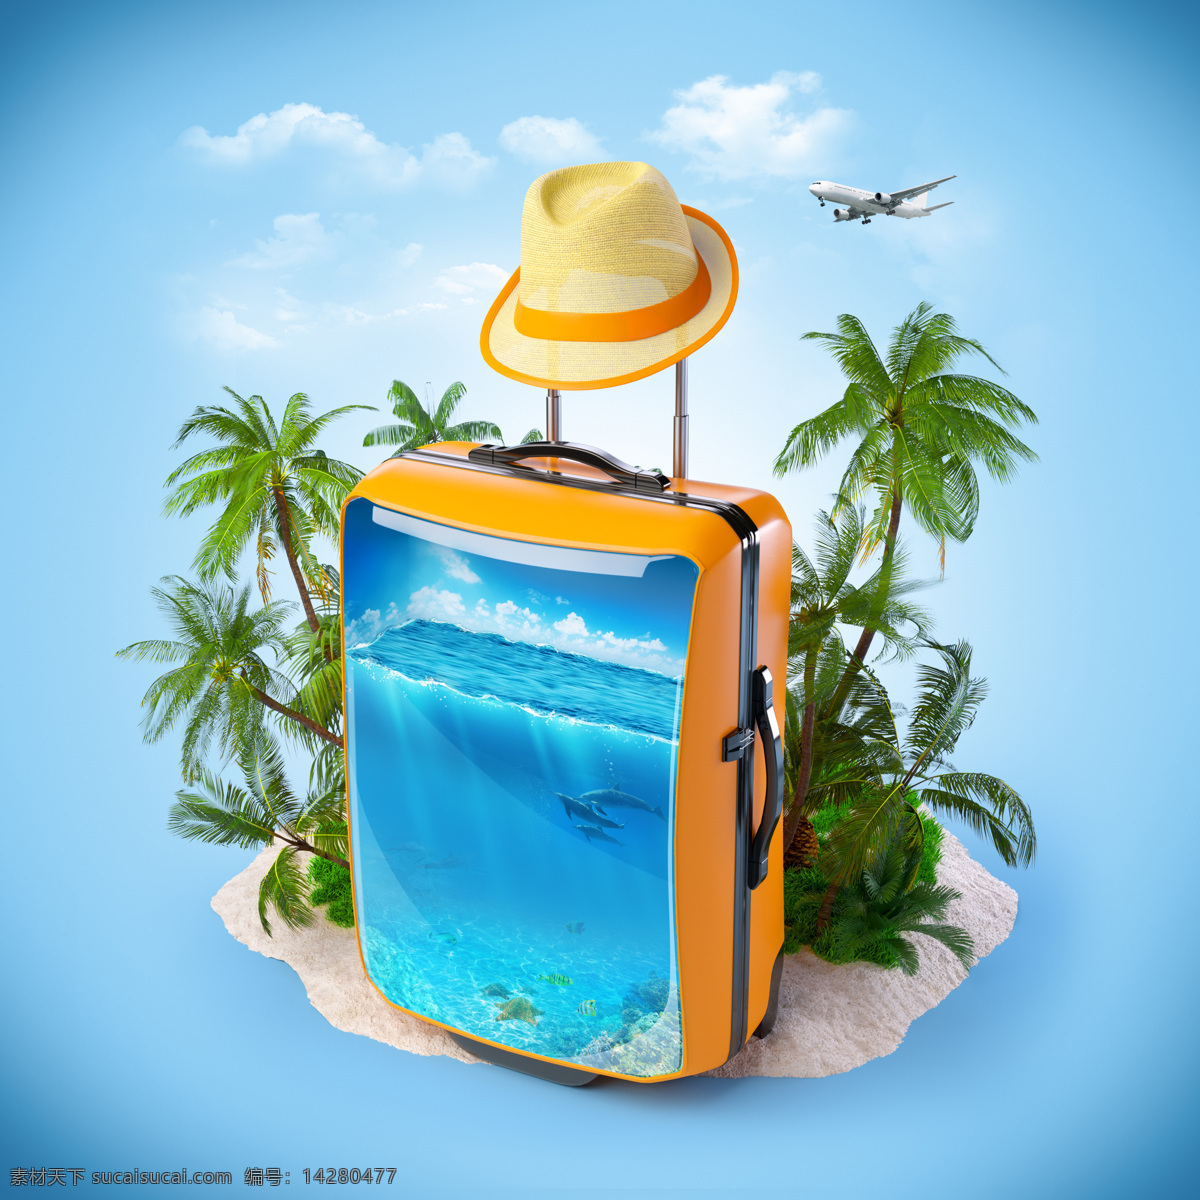 旅行箱 中 还有 沙滩 椰子树 海洋 飞机 遮阳帽 背景 海报 度假 其他类别 环境家居